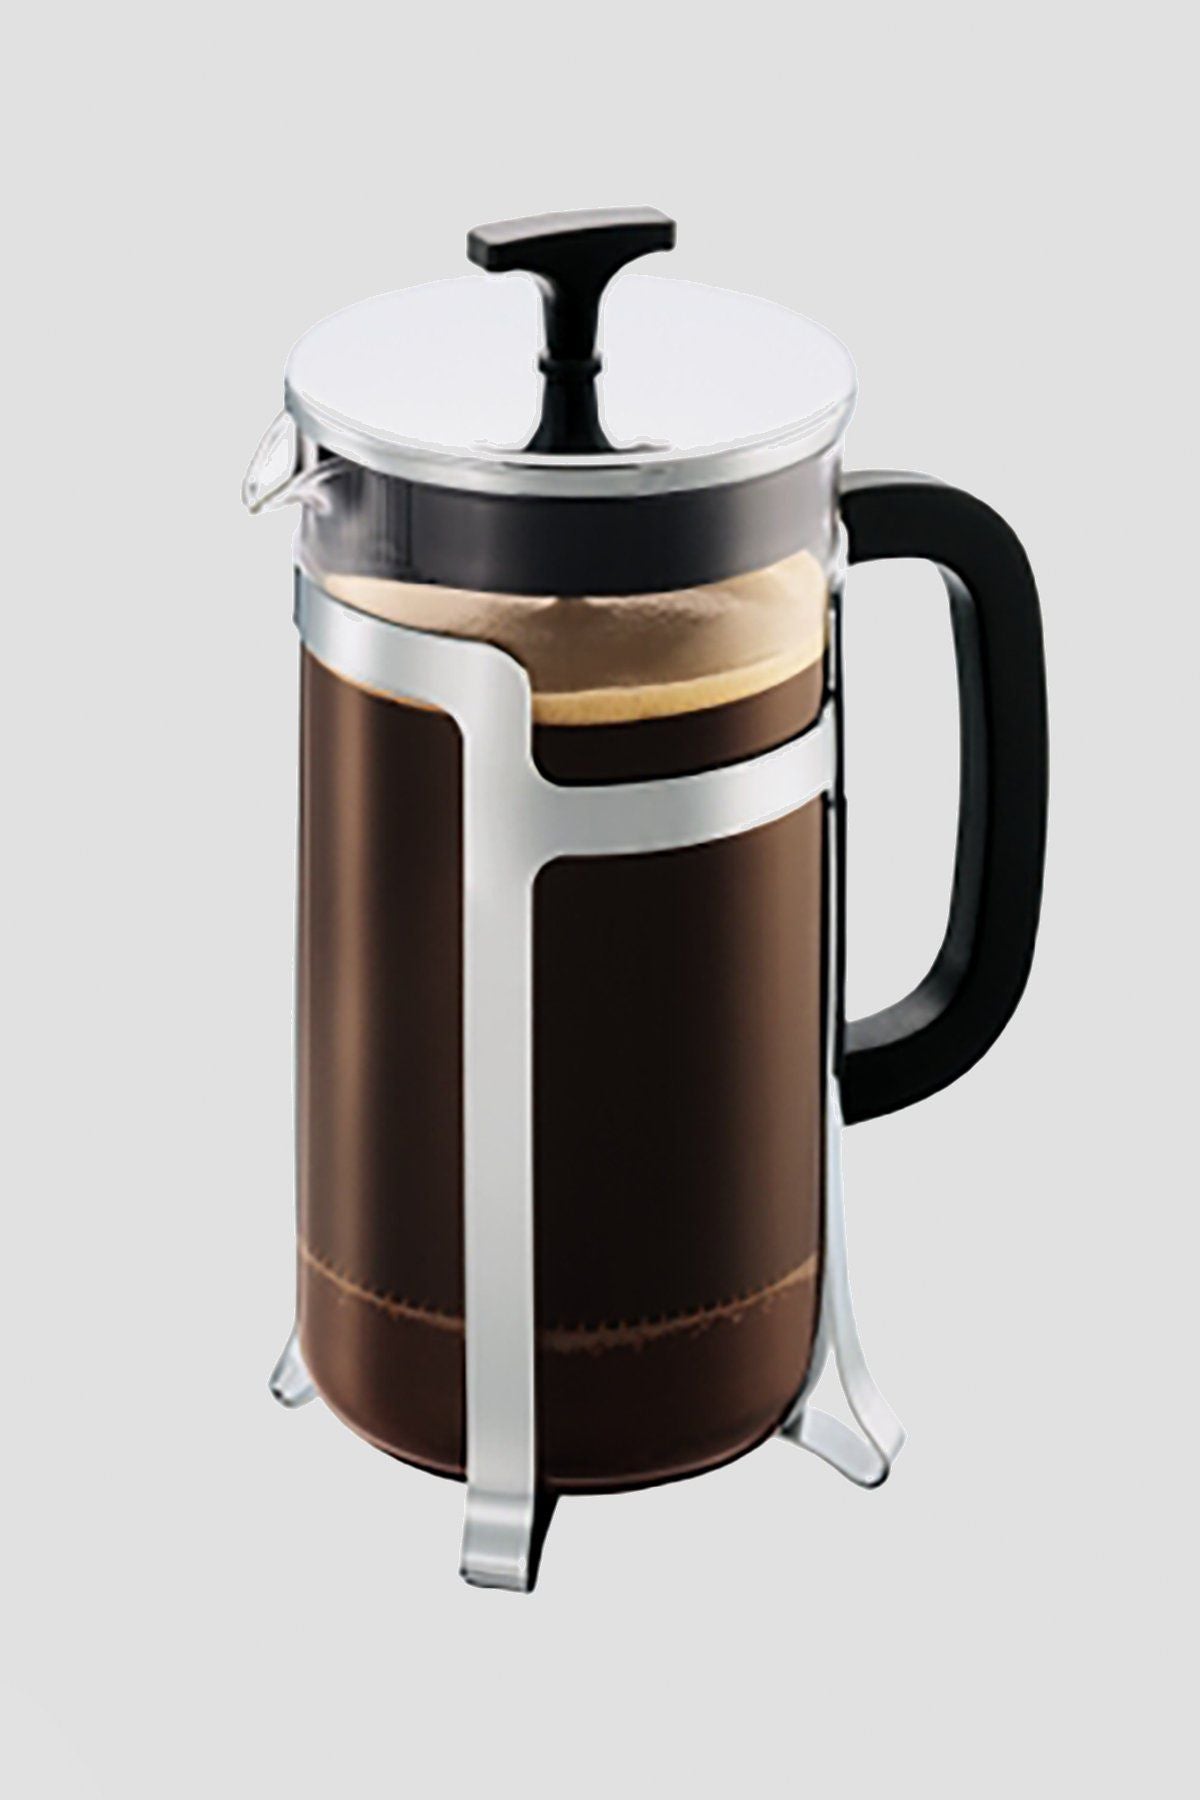 Carraig Donn Jesper Coffee Maker 8 Cup